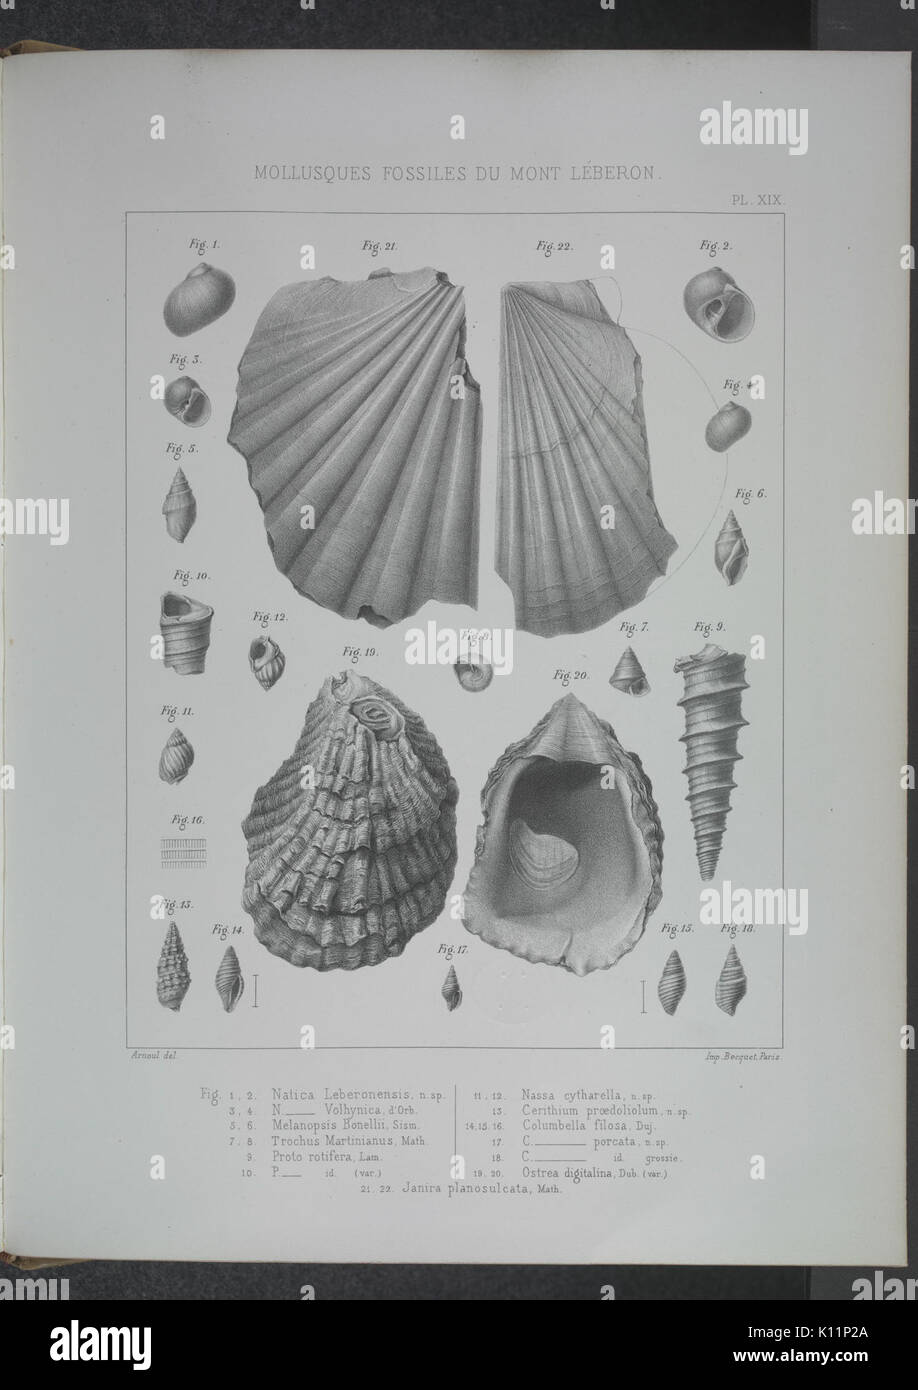 Animaux fossiles du Mont Leberon (Vaucluse) (Pl. XIX) BHL34350759 Stock Photo